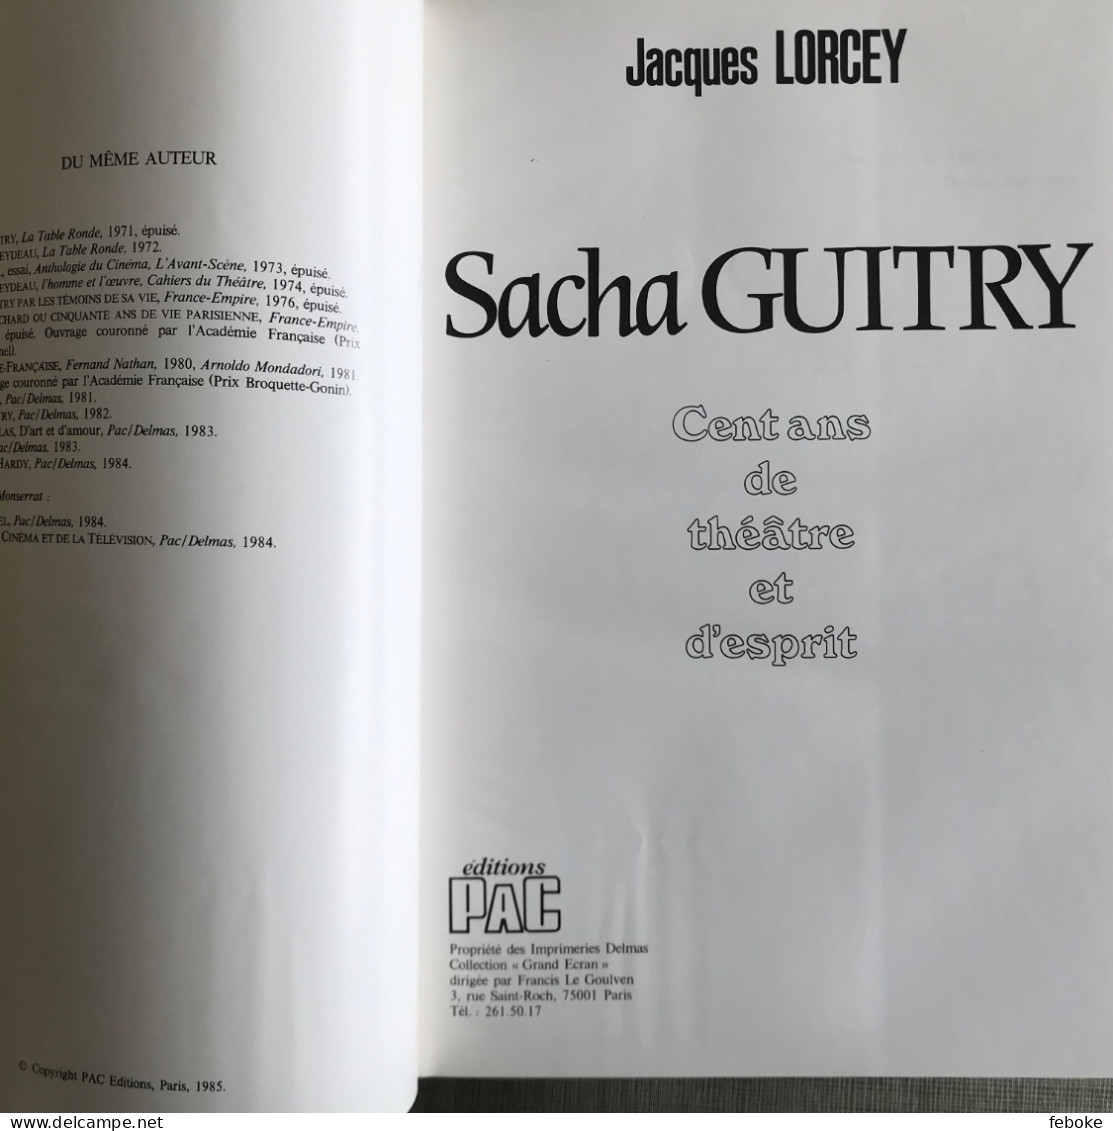 SACHA GUITRY 100 ANS DE THEATRE ET D'ESPRIT DE JACQUES LORCEY PAC EDITIONS PARIS 1985 - French Authors